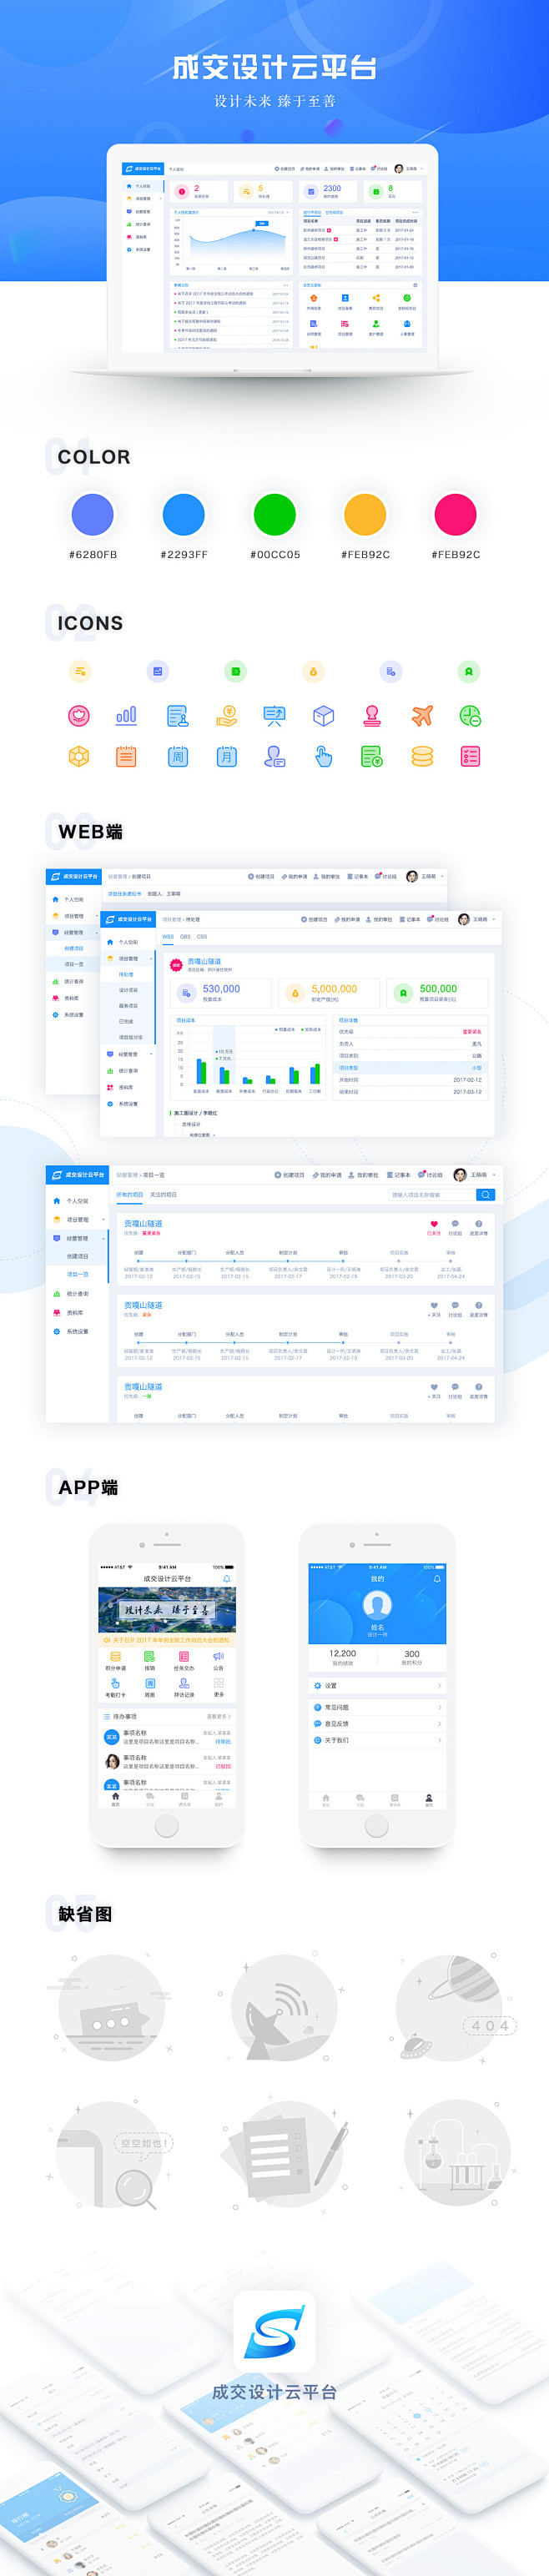 OA系统-UI中国用户体验设计平台